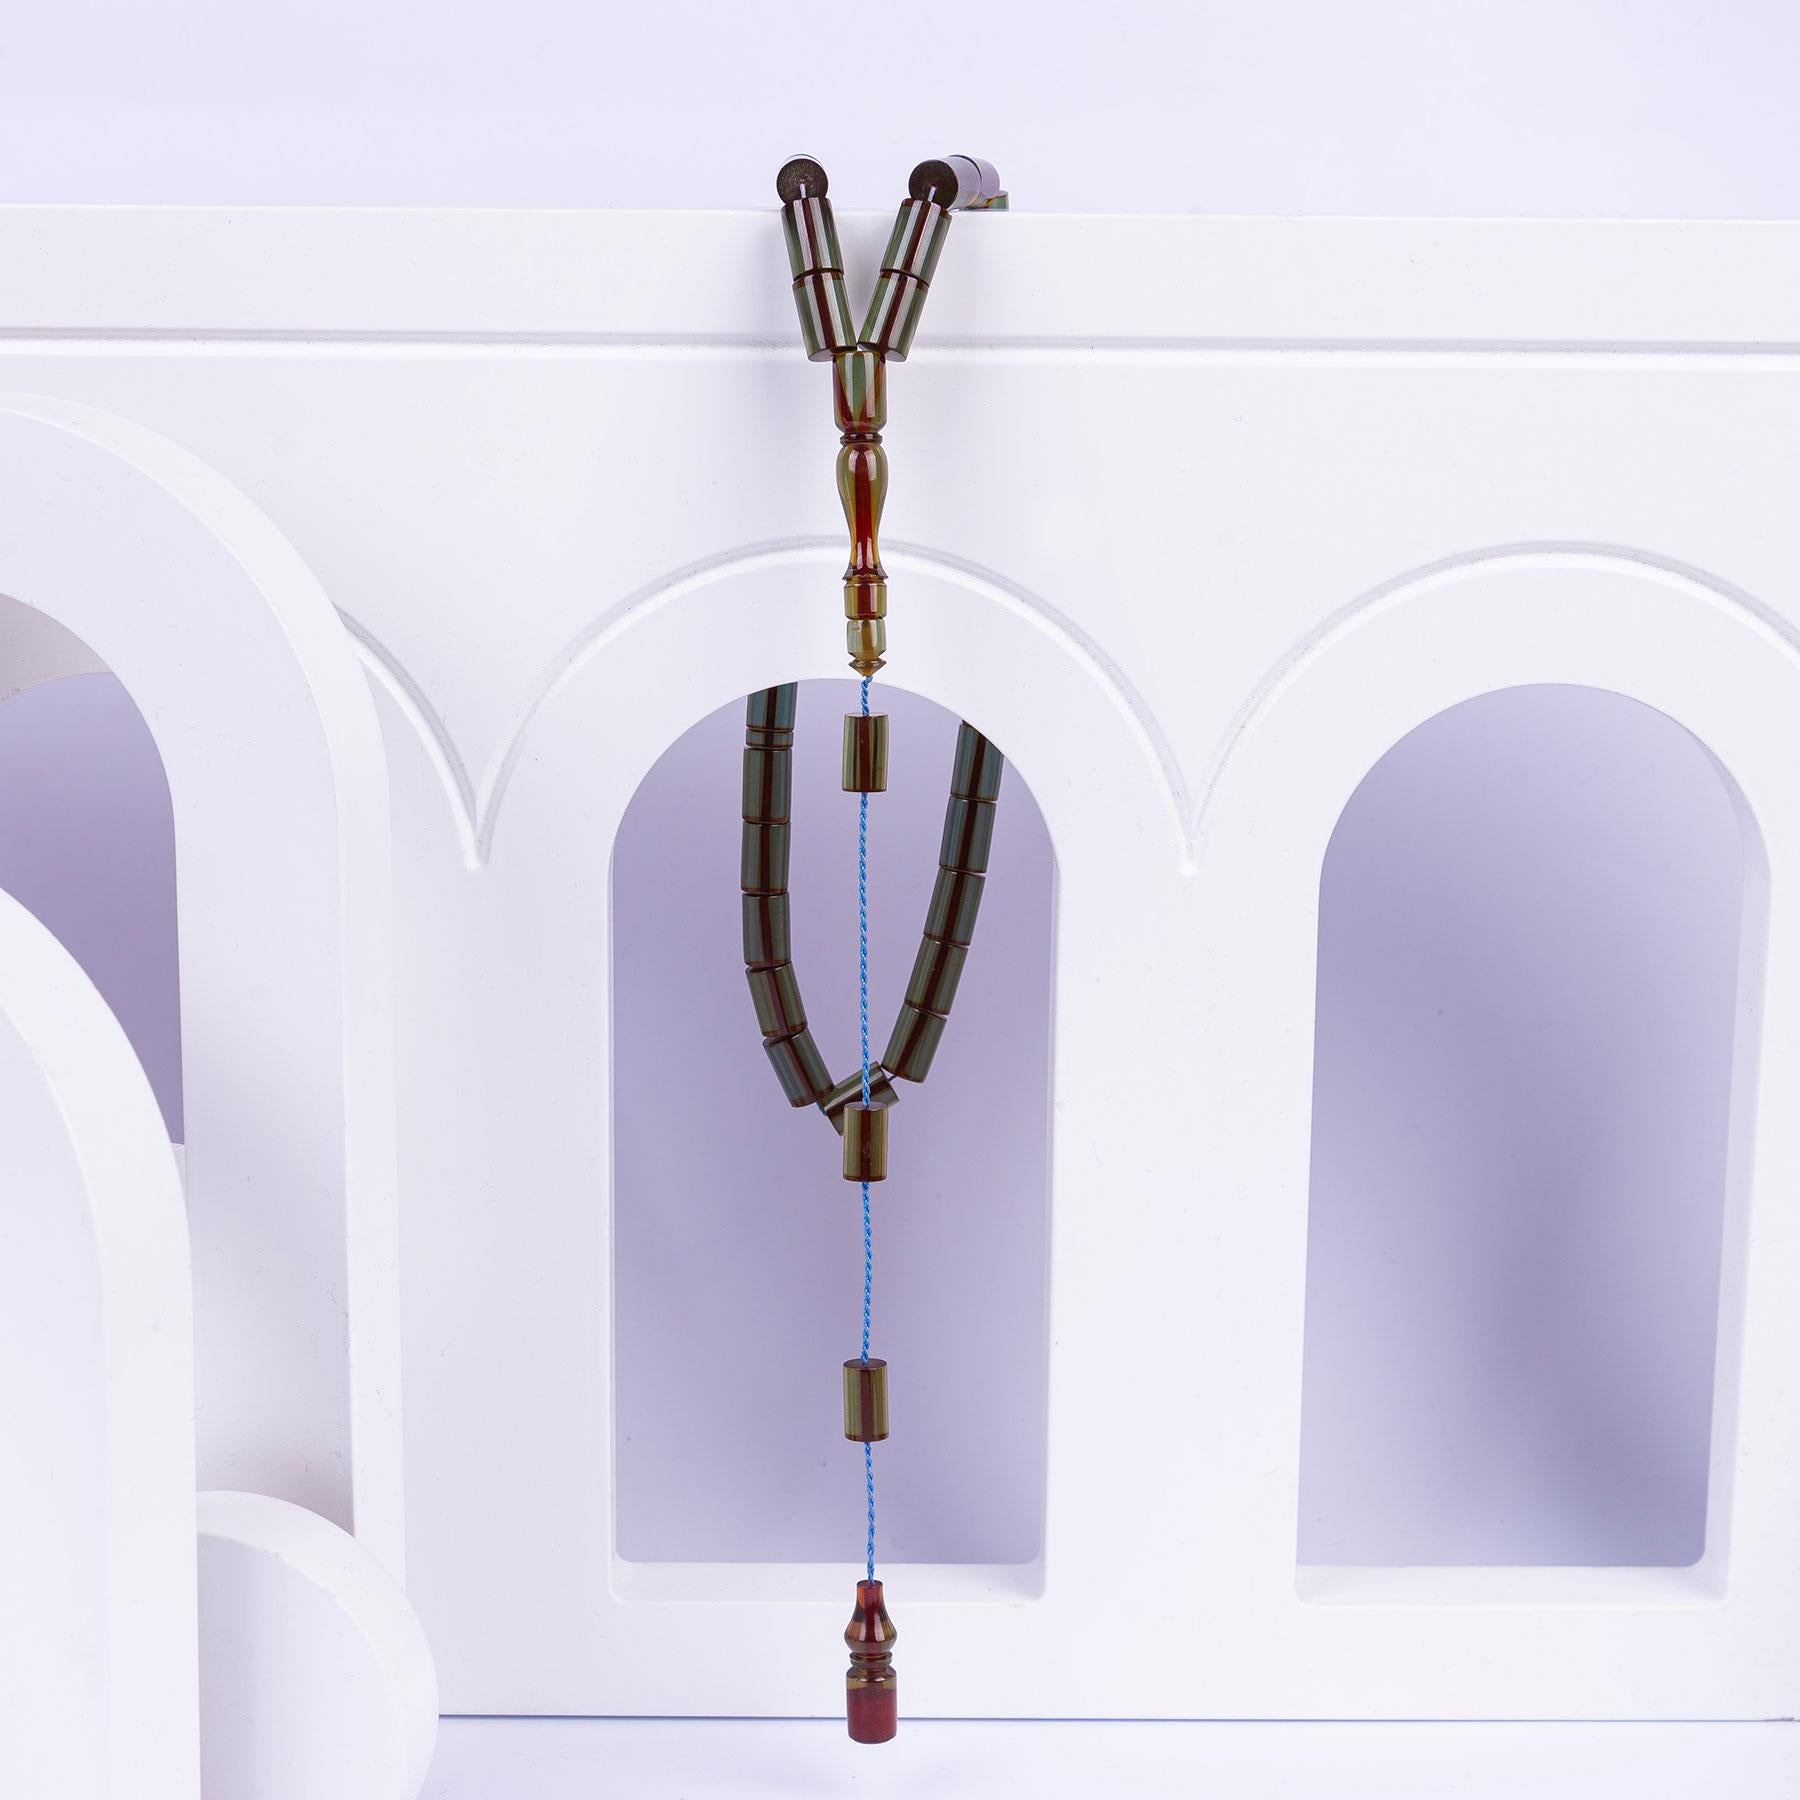 Amber Prayer Beads 2